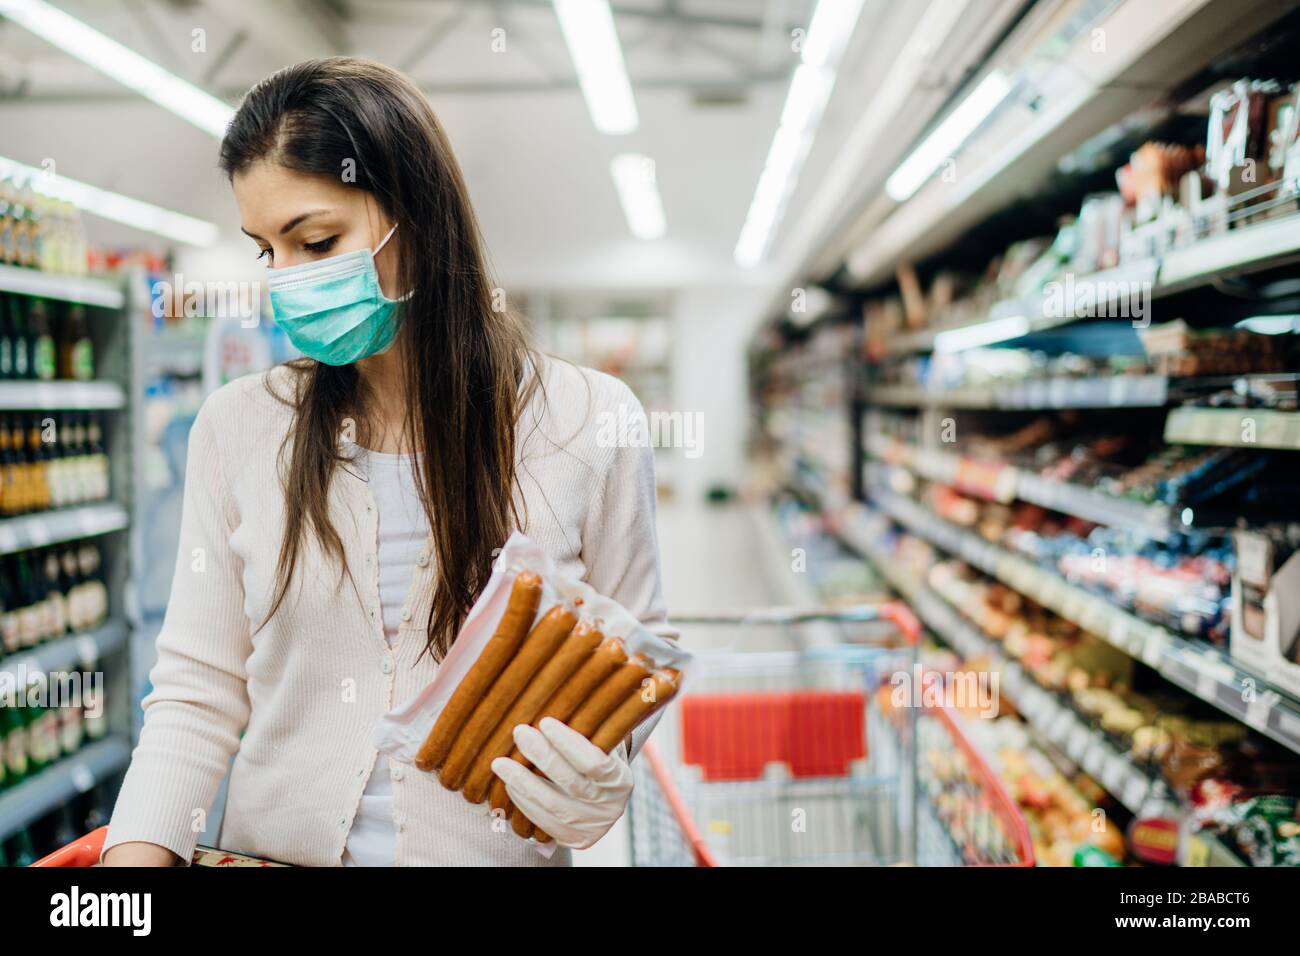 Frau mit Schutzmaske und Handschuhen, die für die Versorgung einkauft.Budget einkaufen in einem Supermarkt.Kauf verarbeiteter, nicht verderblicher Lebensmittel.Vorbereitung für eine pande Stockfoto